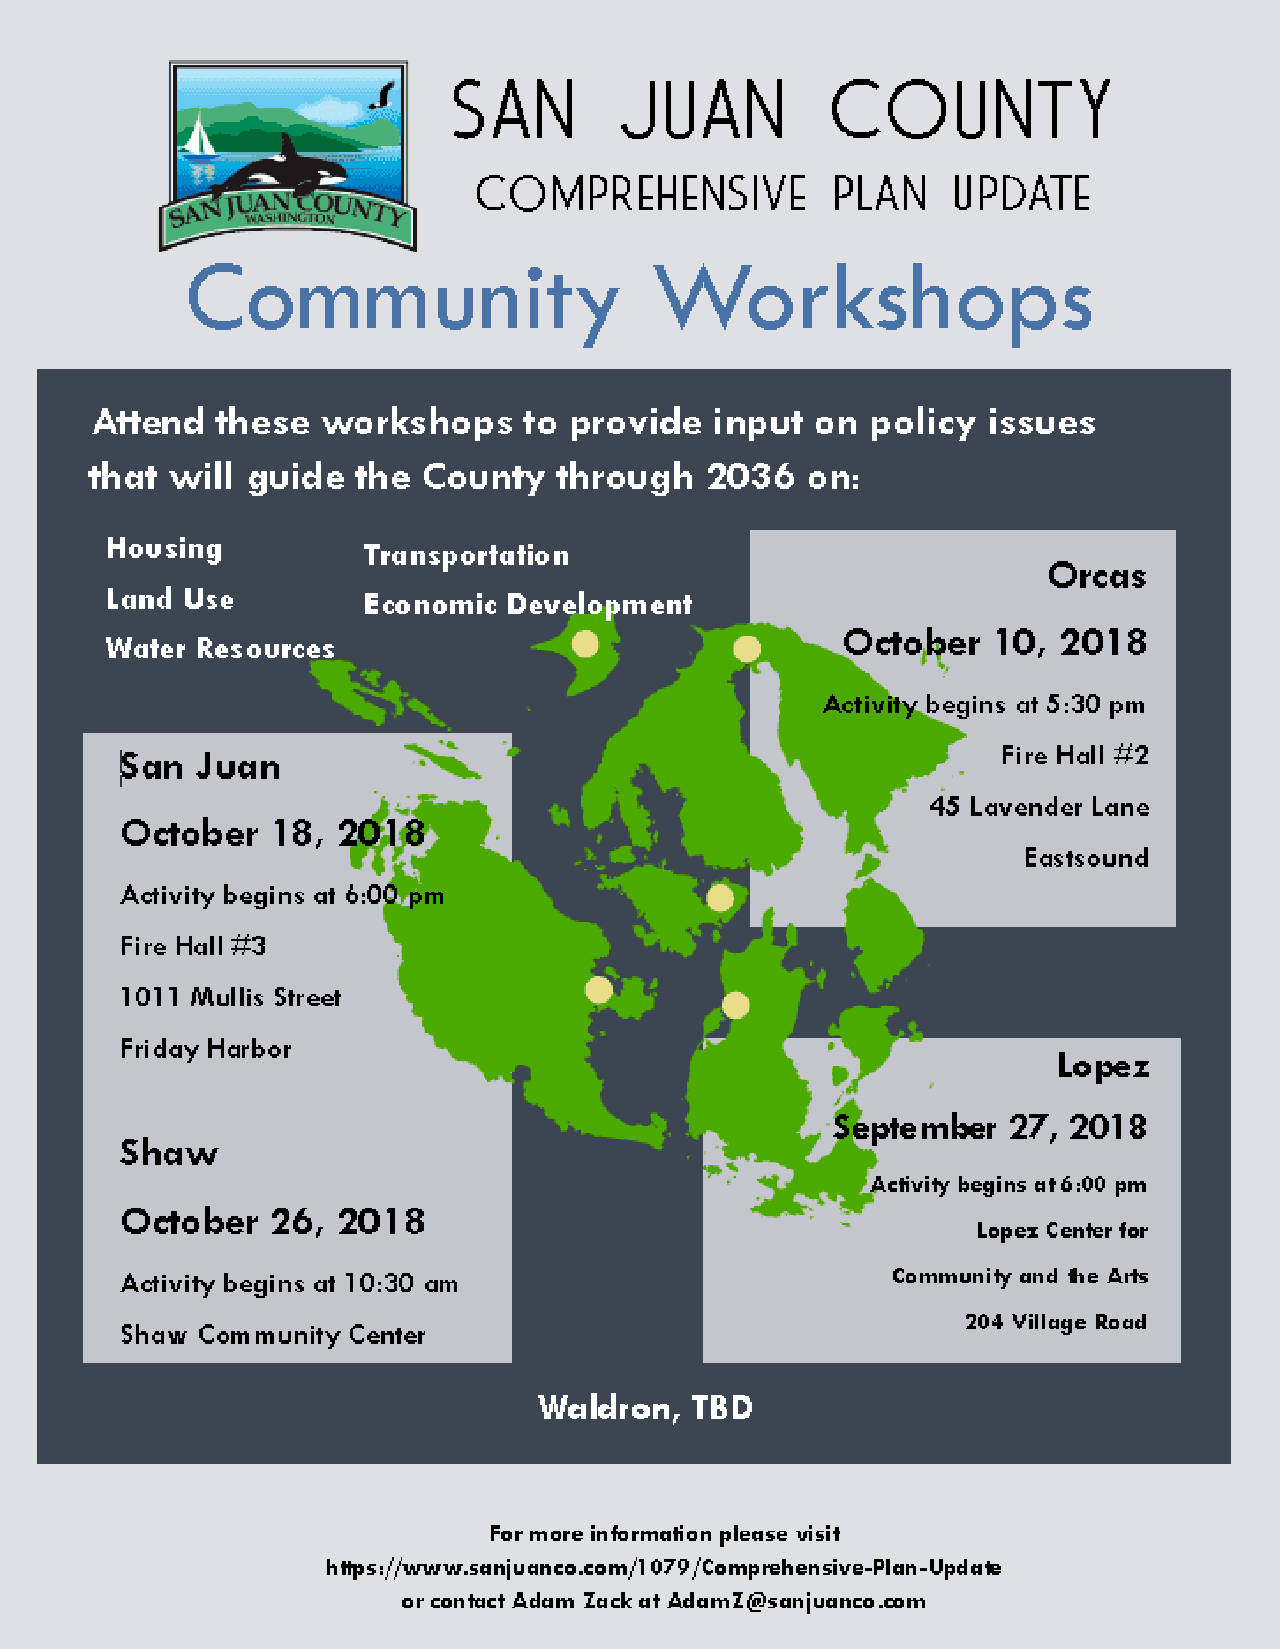 Orcas Community Workshop, Oct. 10